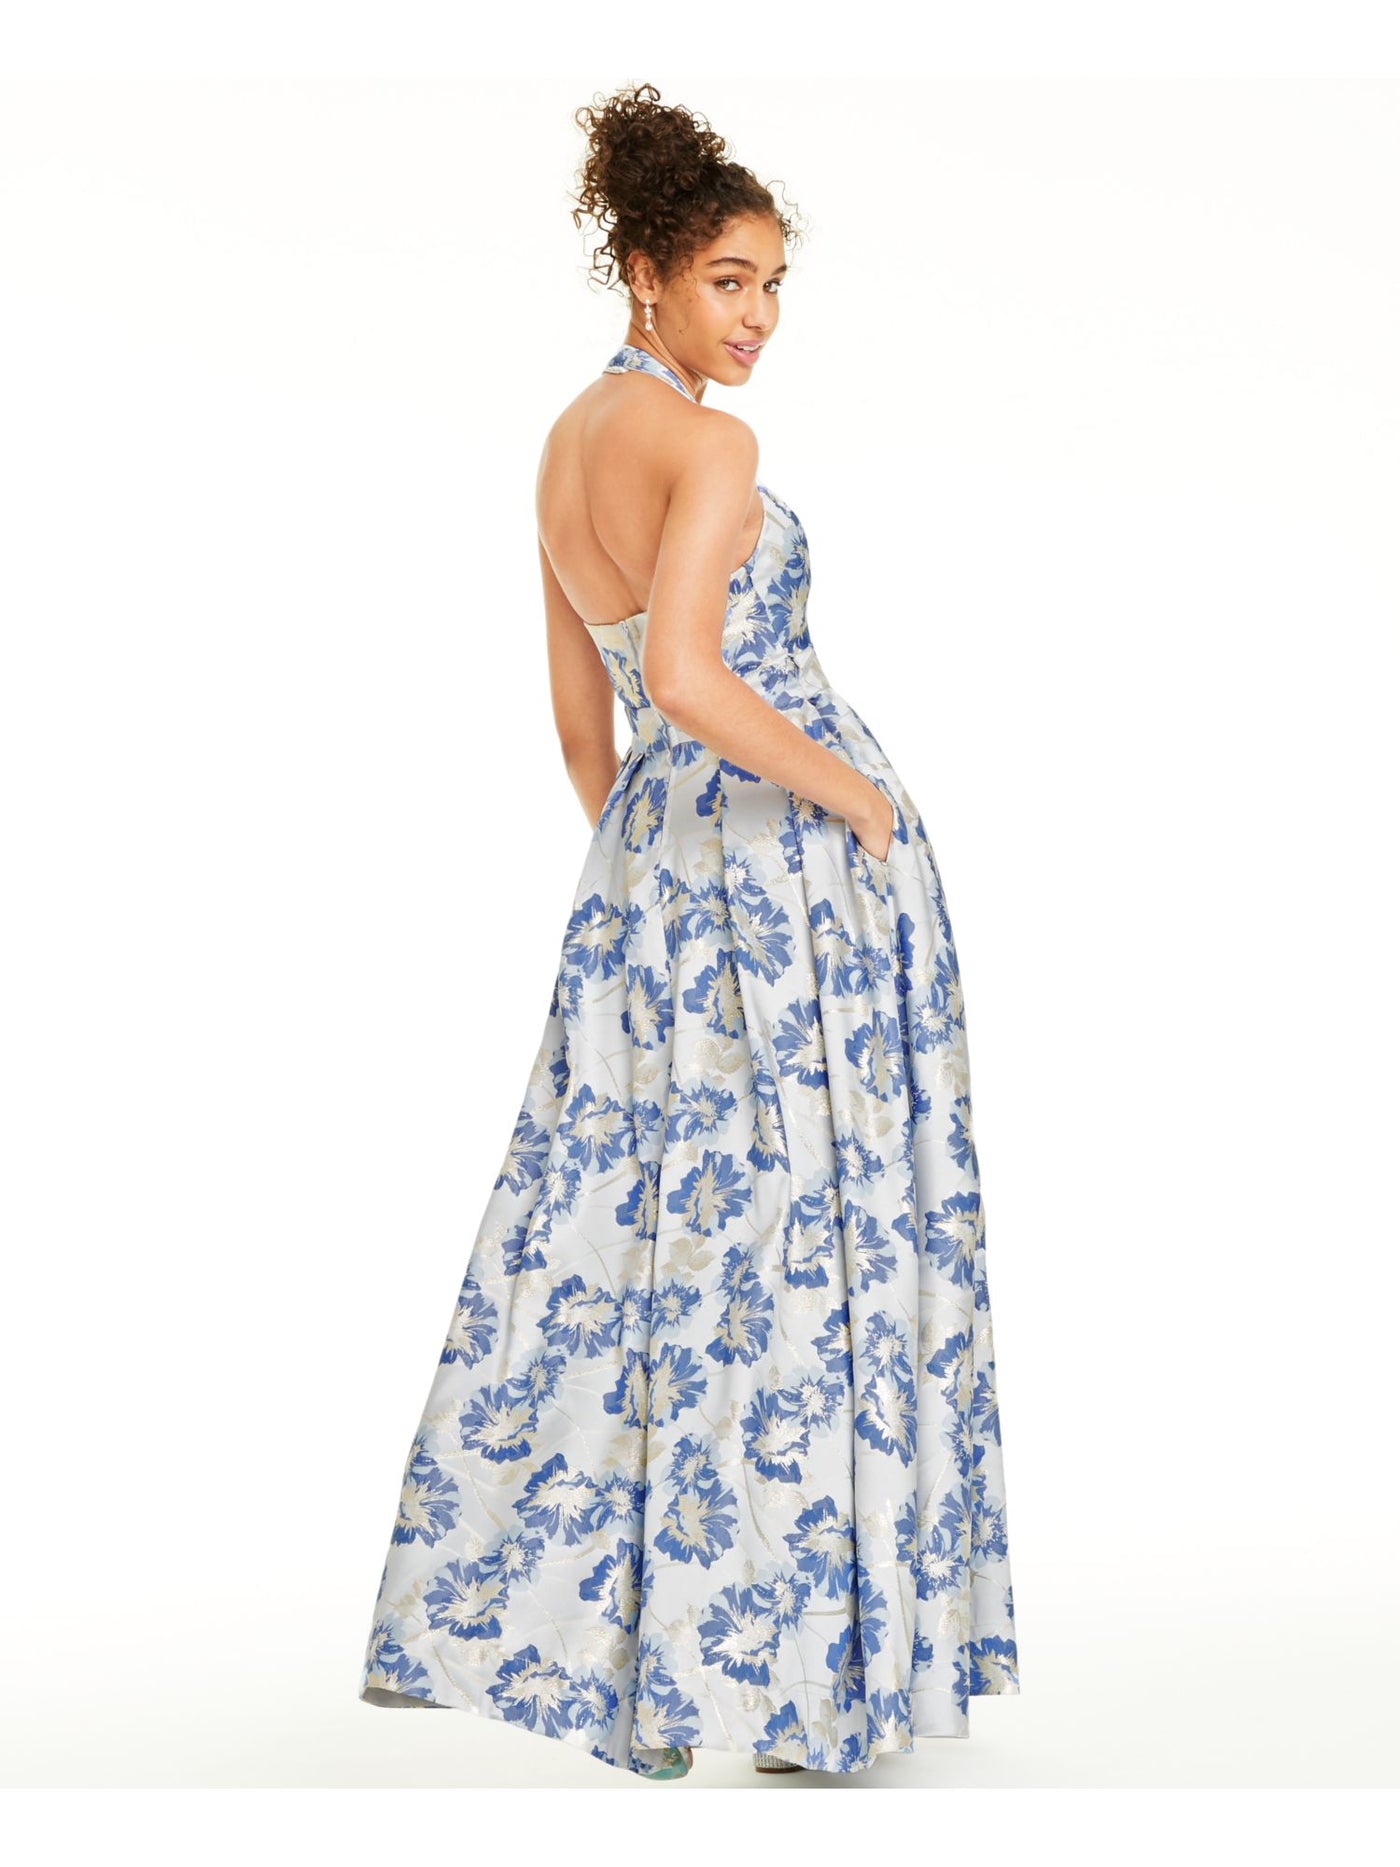 SPEECHLESS Womens Blue Floral Sleeveless V Neck Full-Length Formal Fit + Flare Dress Juniors 1